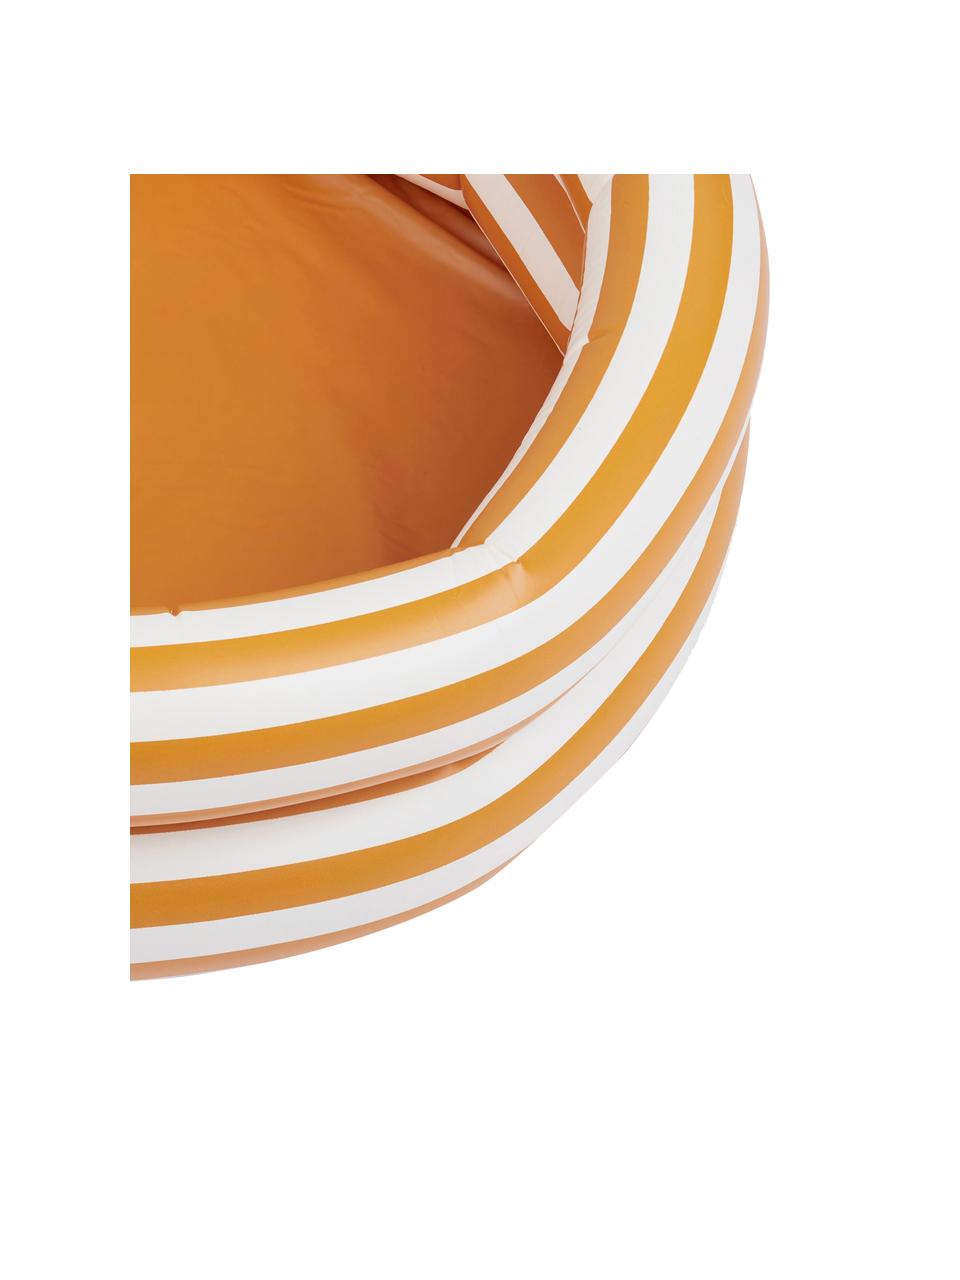 Basen Leonora, Tworzywo sztuczne (PCV), Pomarańczowy, biały, czarny, Ø 80 x W 20 cm